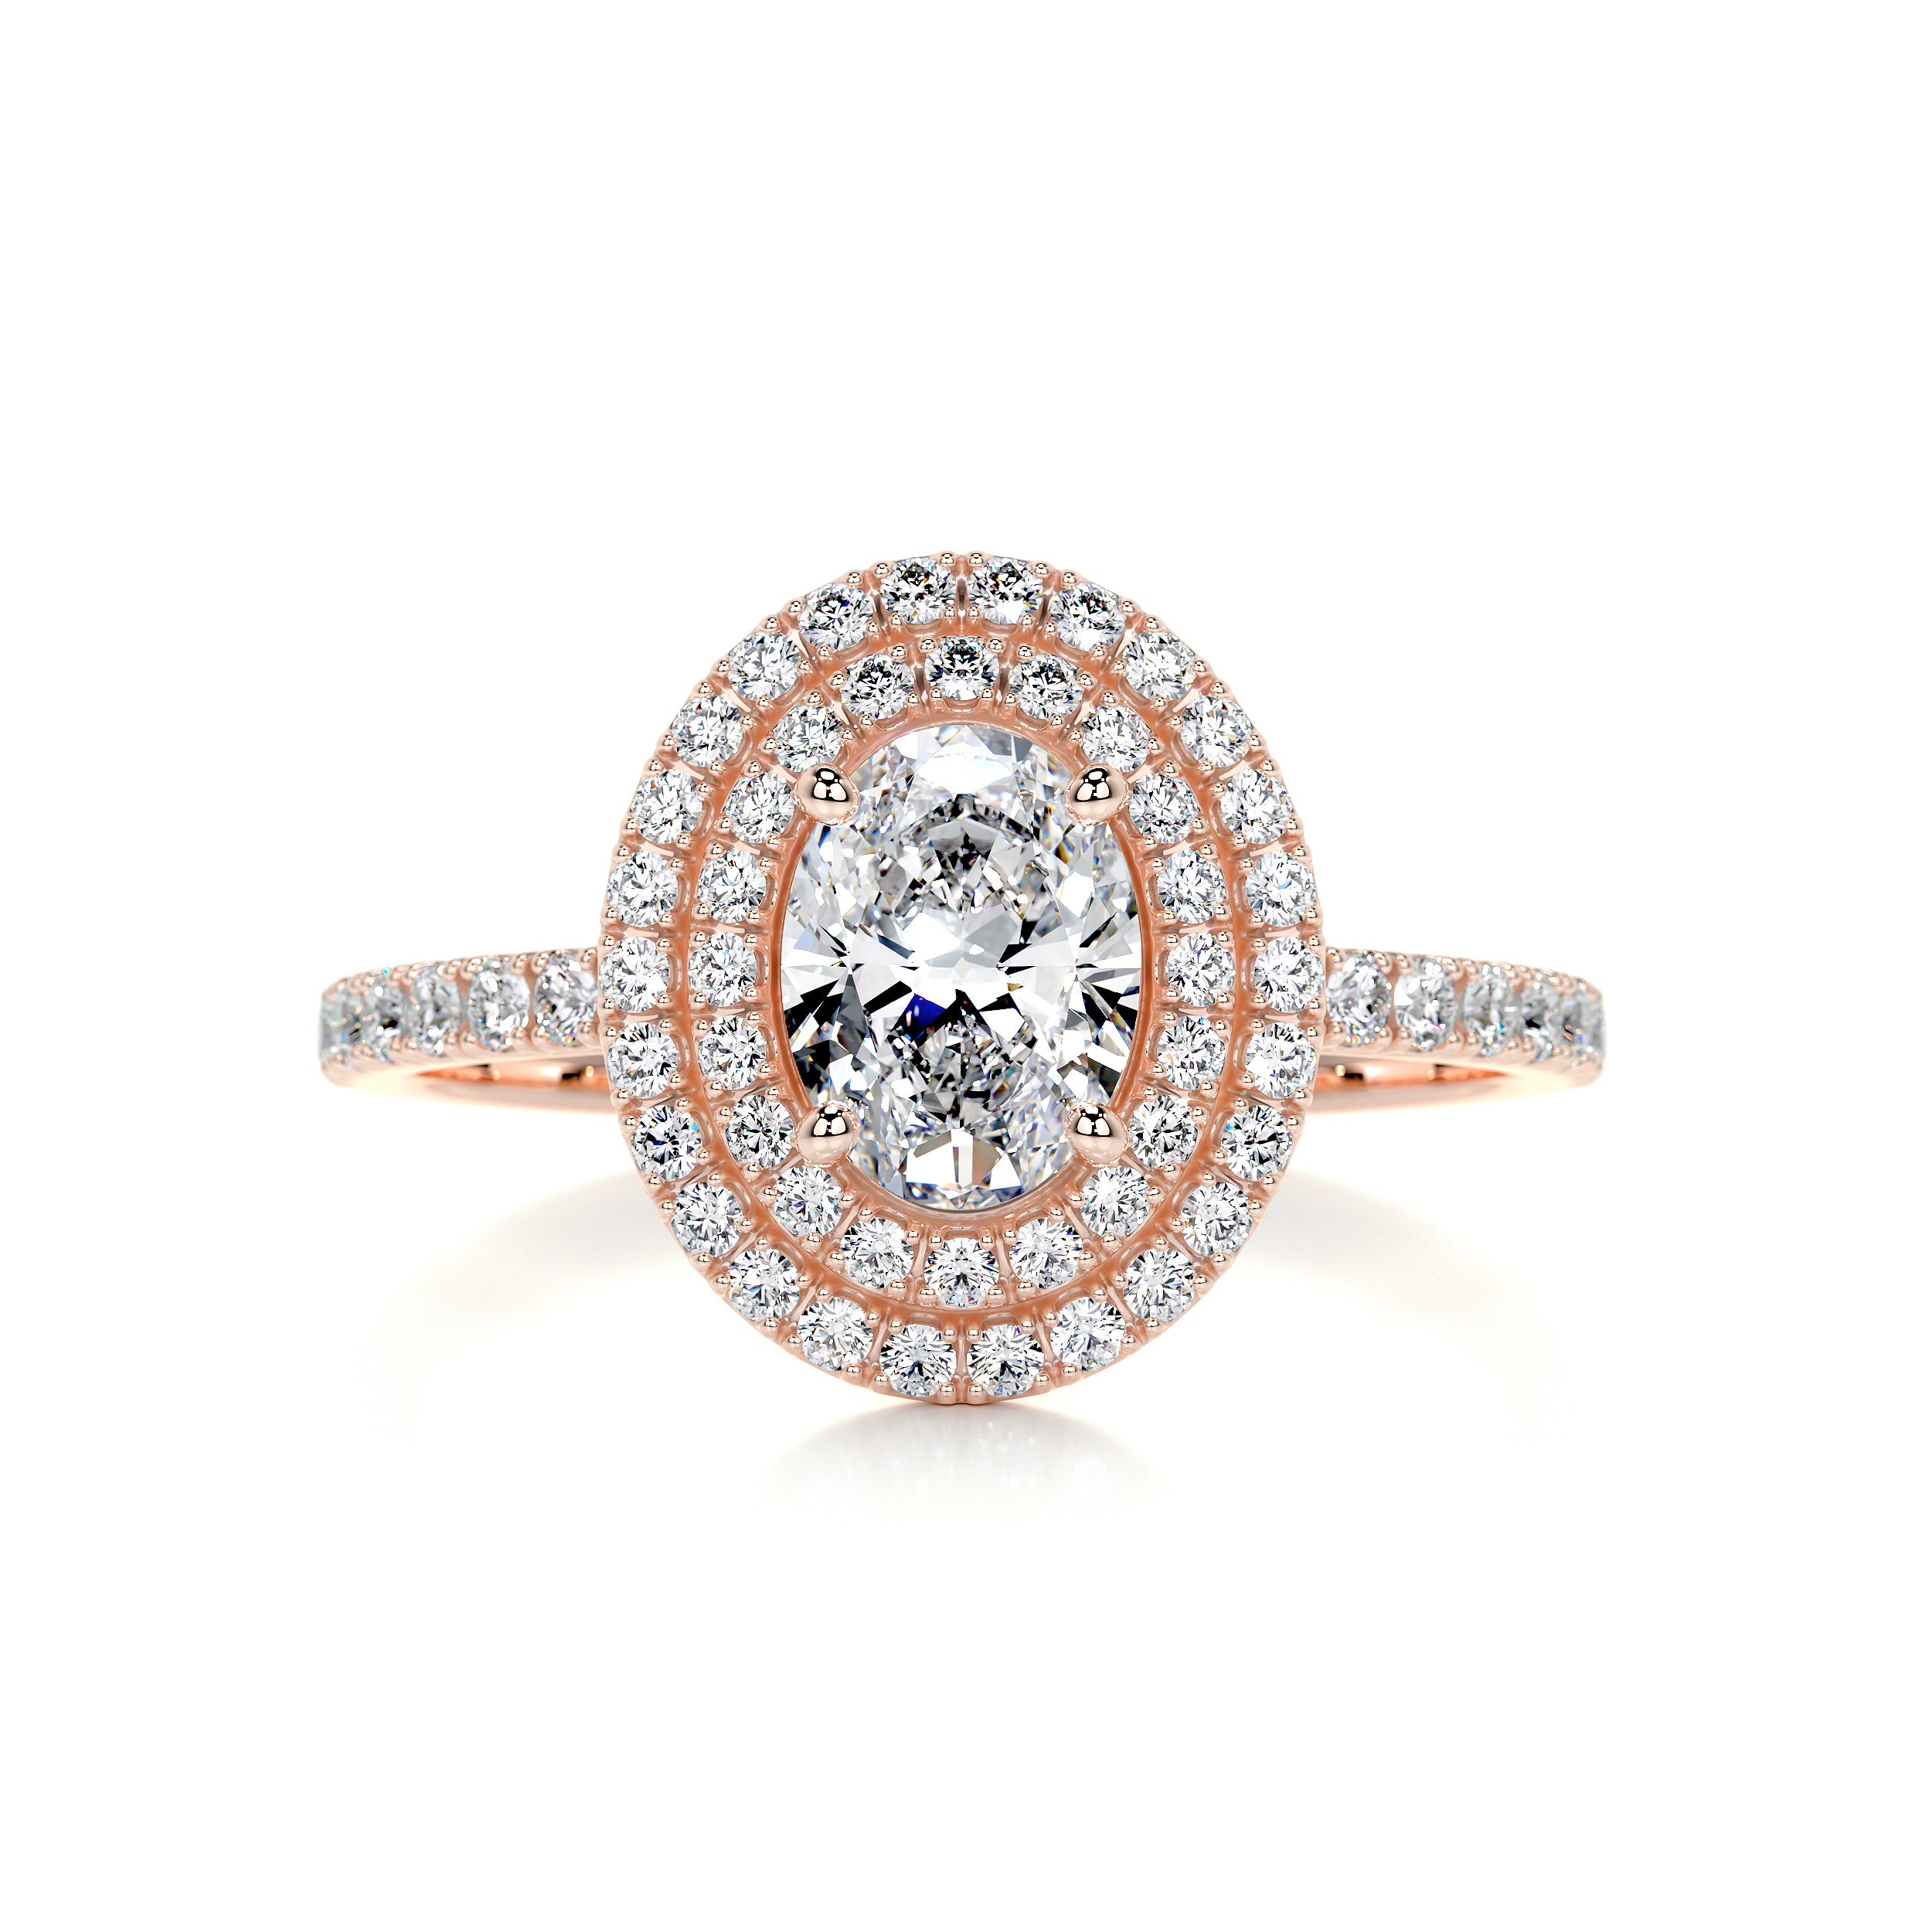 Nora Diamond Engagement Ring   (1.75 Carat) -14K Rose Gold